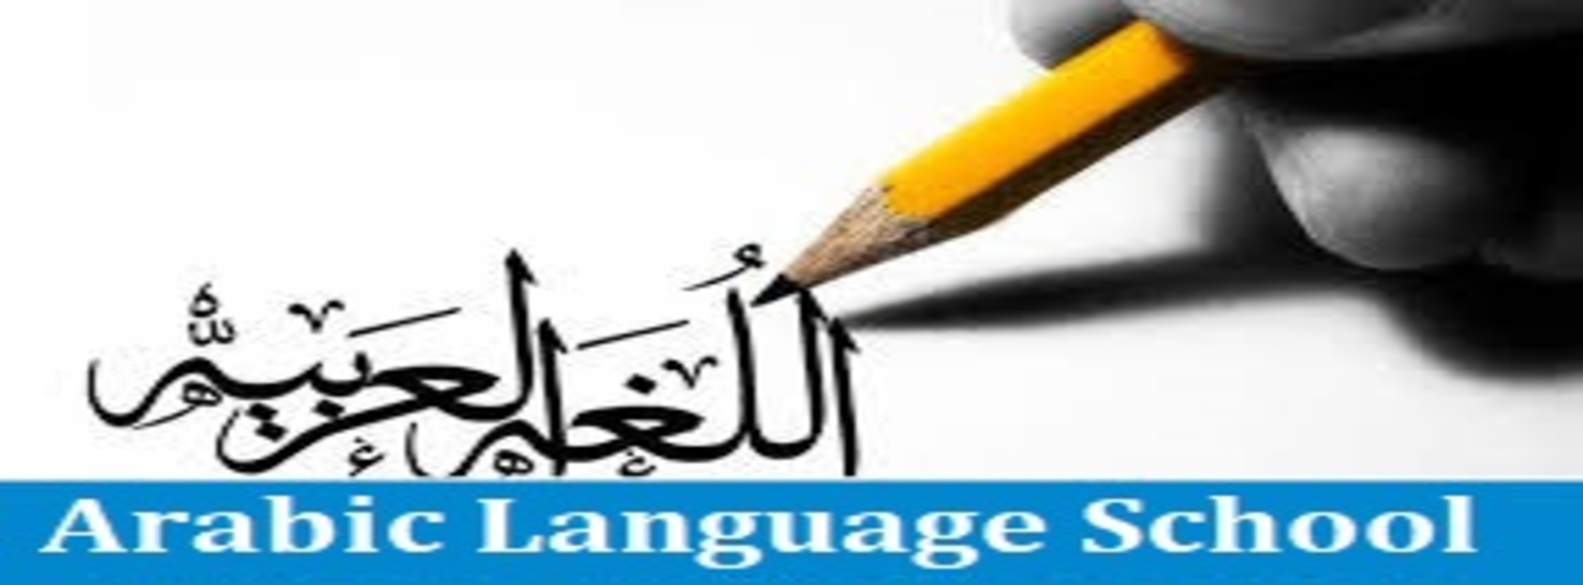  منهج اللغة العربية